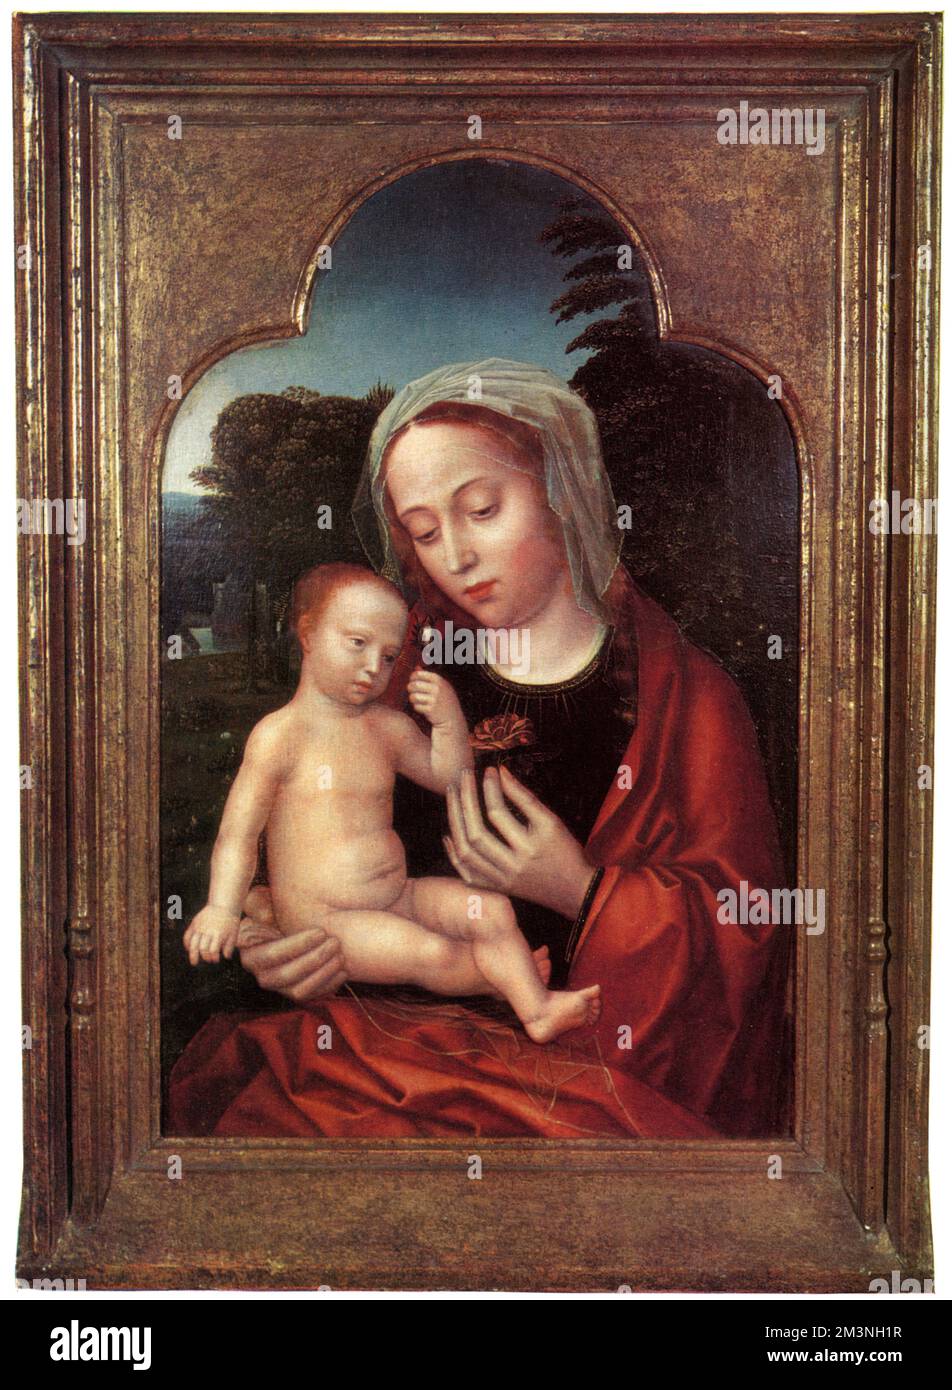 Madonna und Kind von Adriaen Isenbrant, Maler der flämischen Schule in der ersten Hälfte des 16. Jahrhunderts. Datum: 1961 Stockfoto